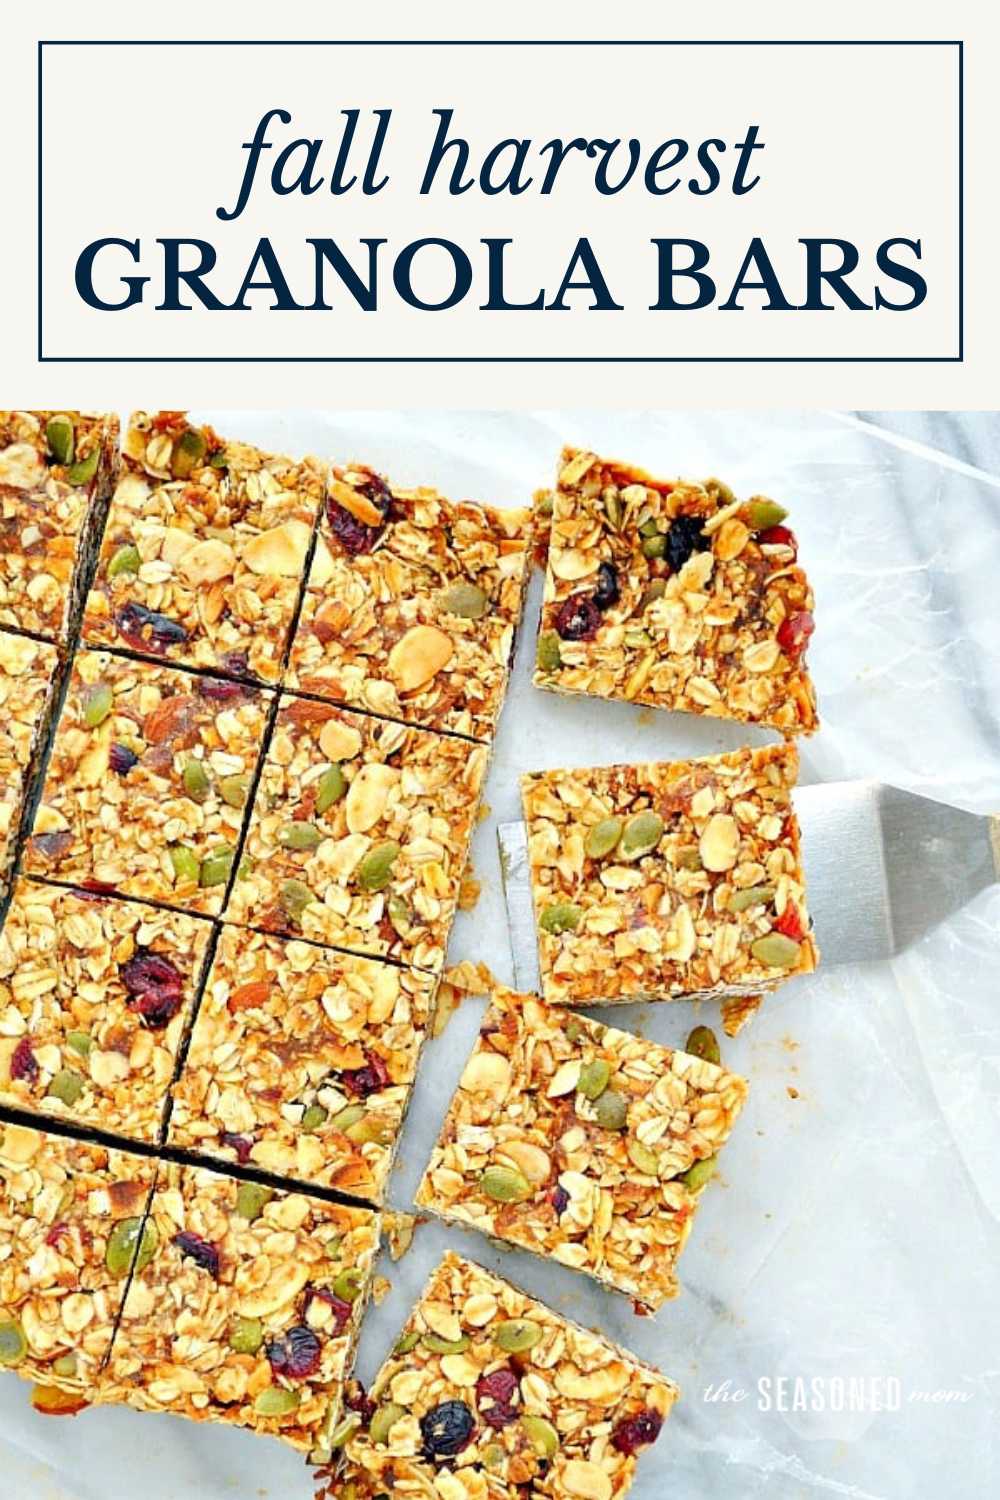 Fall Harvest Healthy Granola Bars - The Seasoned Mom